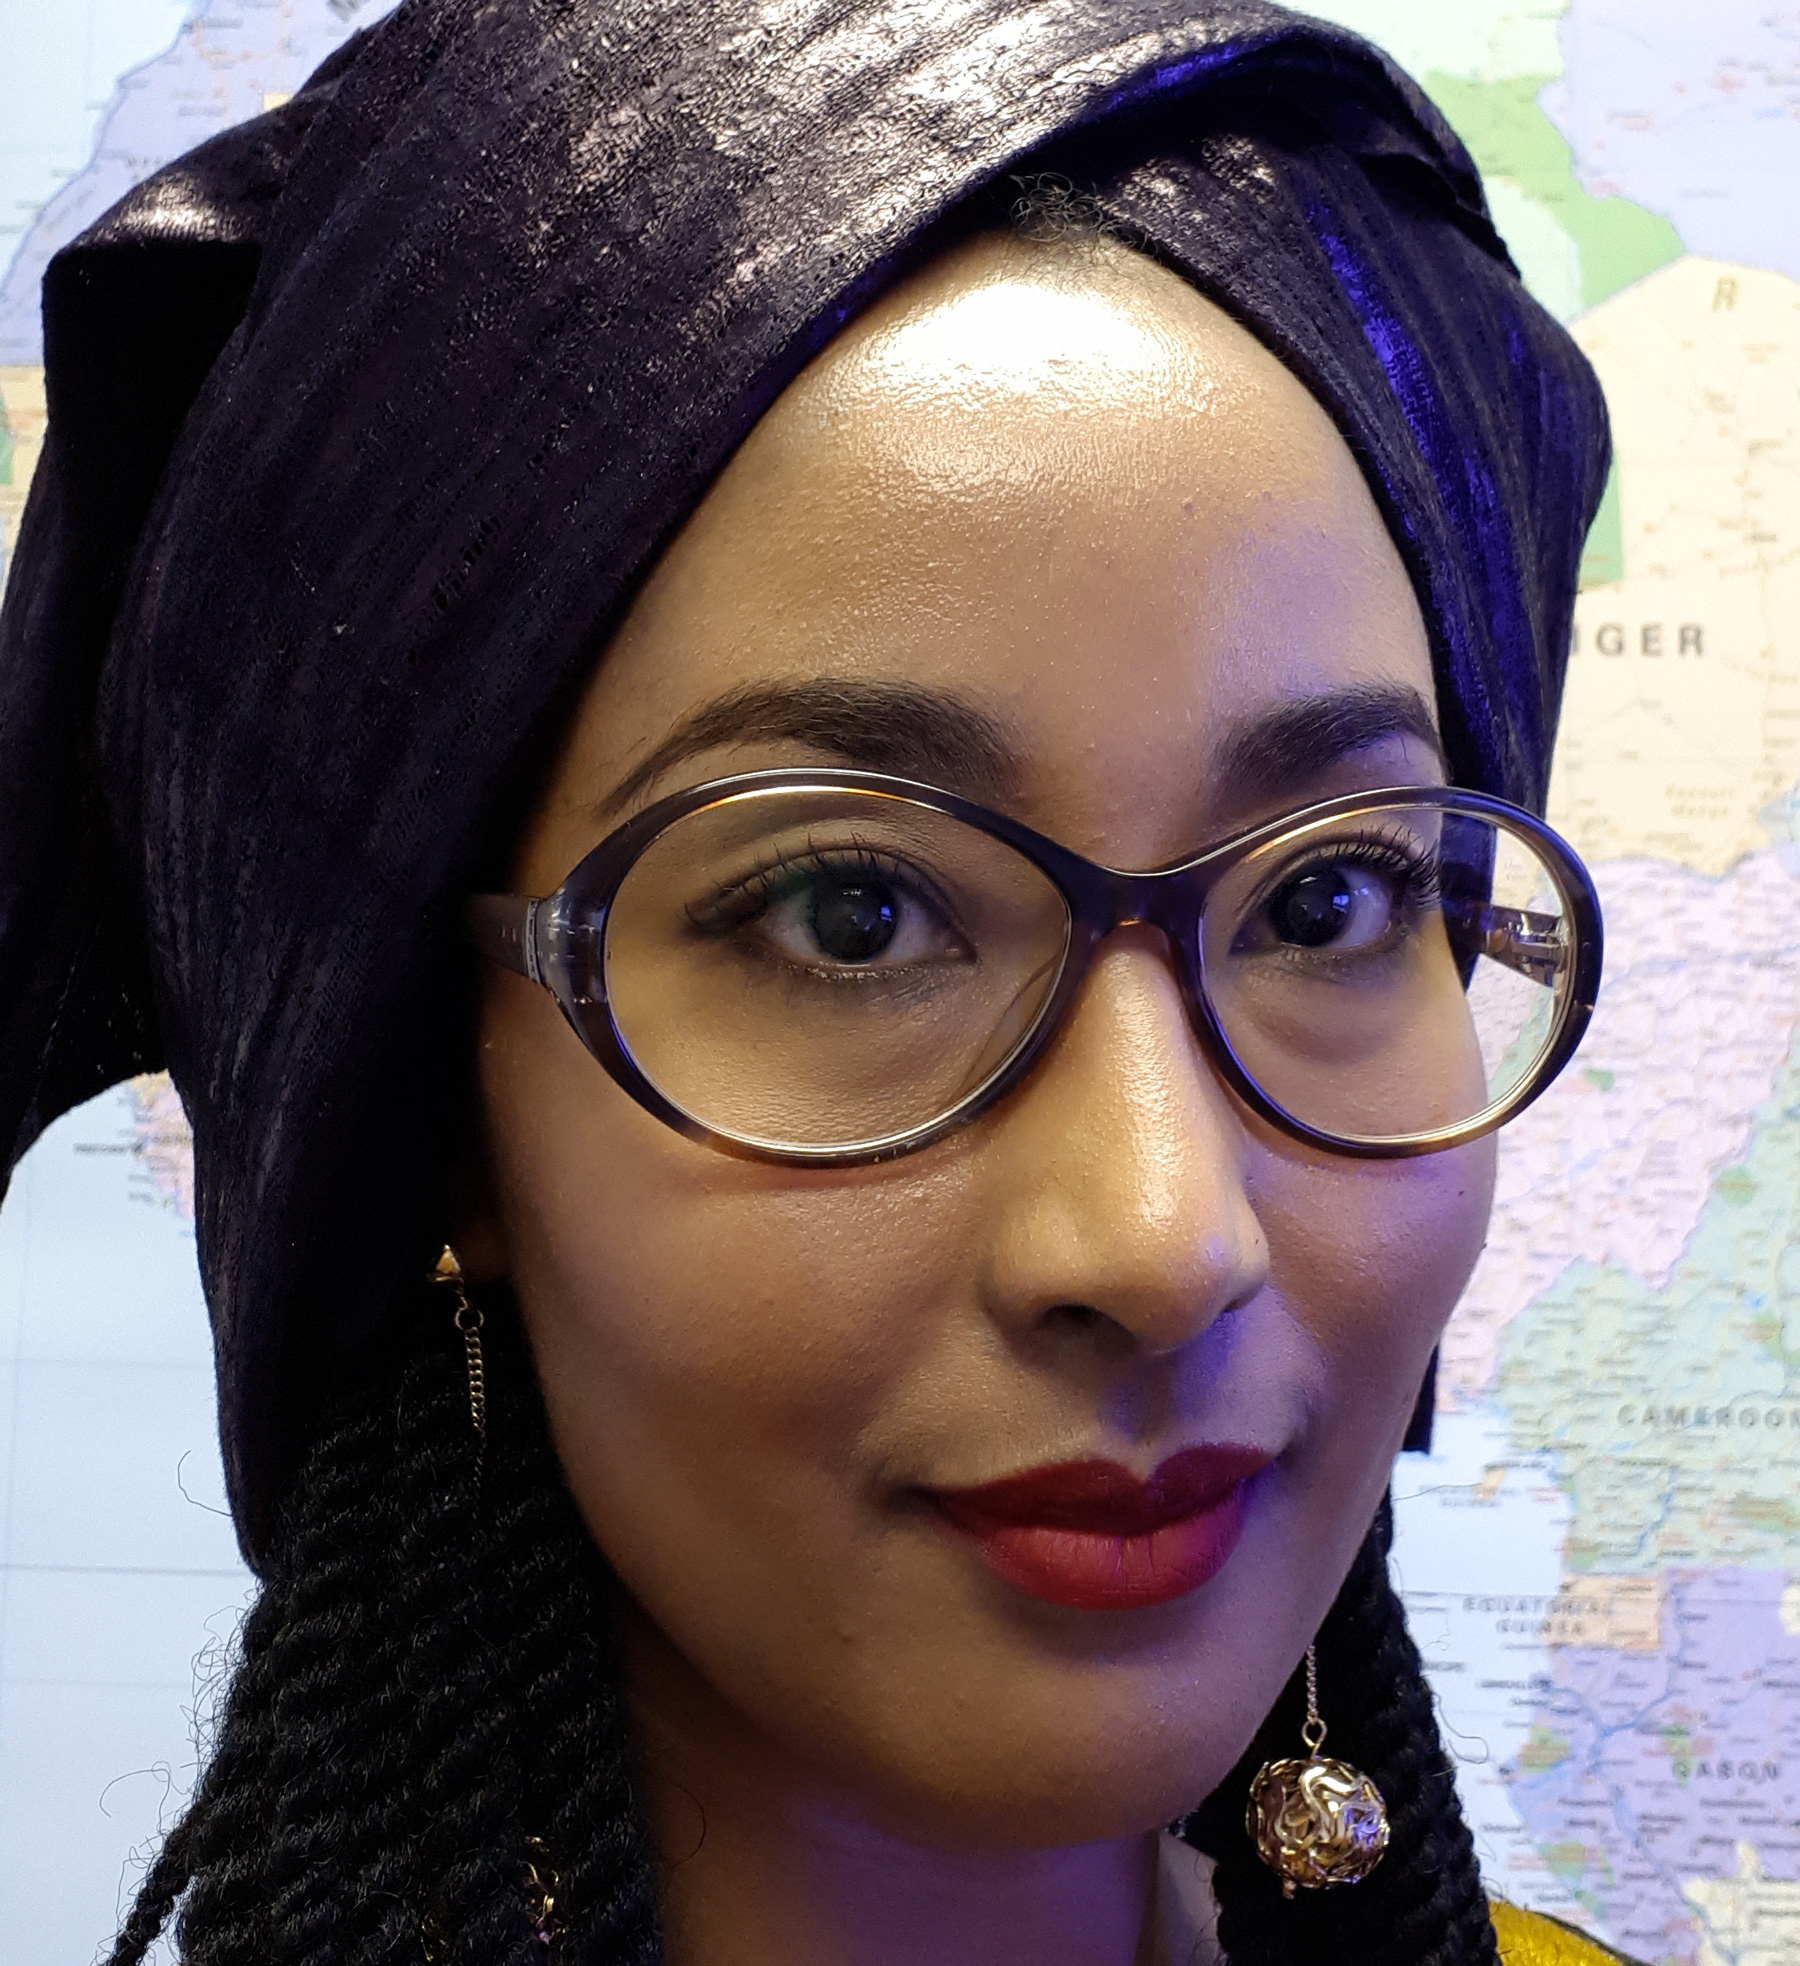 La Nigérienne de la semaine : Mme N’Zi Fati Hassane, cadre à l’Agence du NEPAD